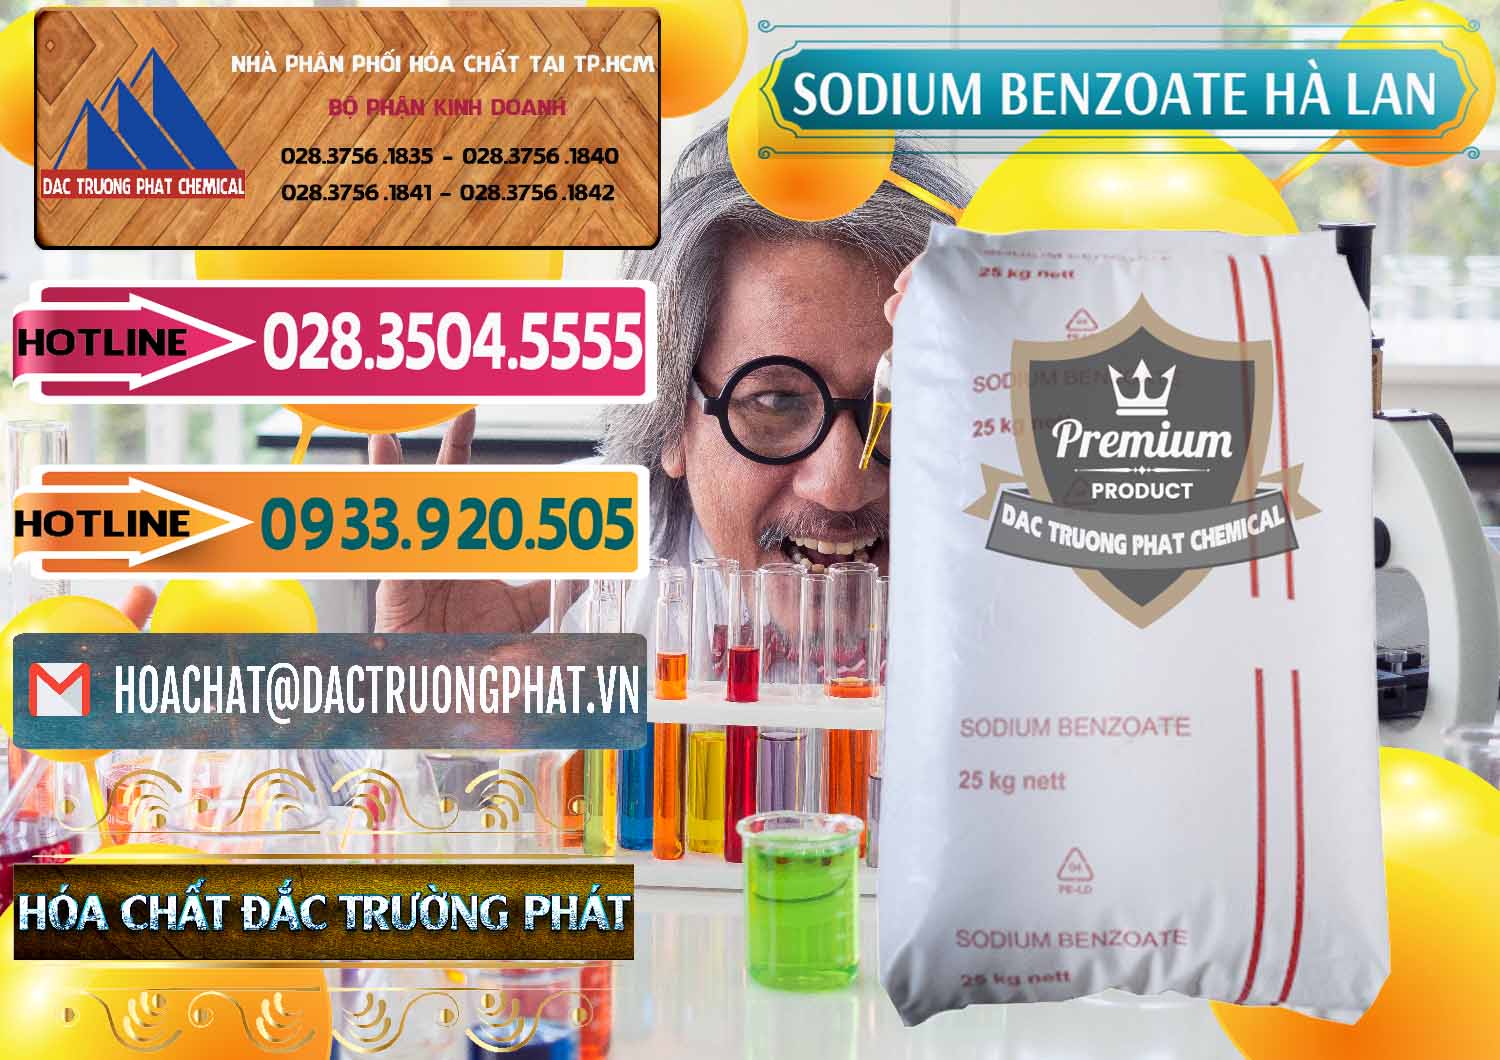 Nơi chuyên bán - cung cấp Sodium Benzoate - Mốc Bột Chữ Cam Hà Lan Netherlands - 0360 - Cty cung cấp ( phân phối ) hóa chất tại TP.HCM - dactruongphat.vn